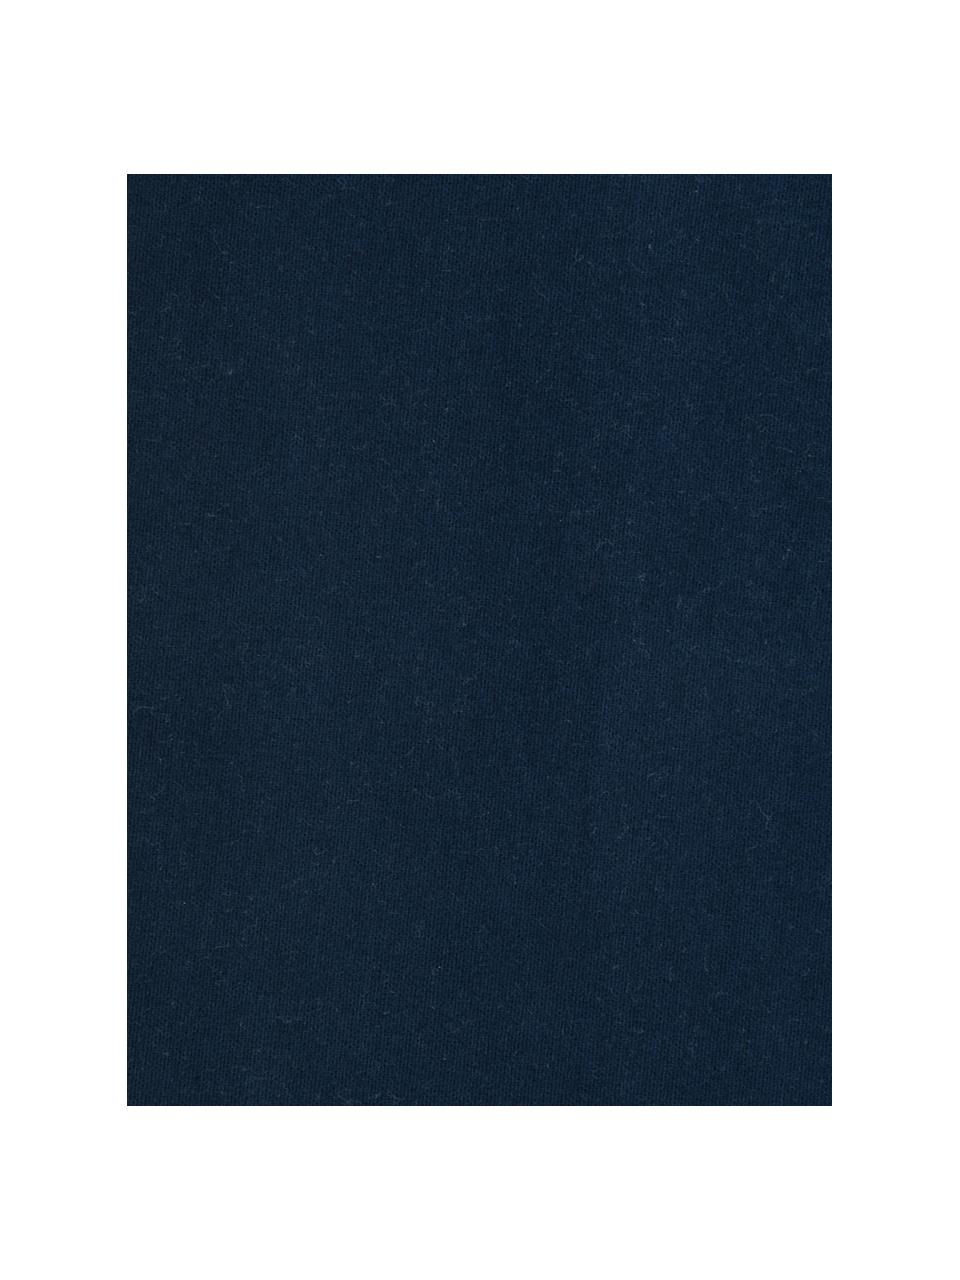 Flanellen hoeslaken Biba in marineblauw, Weeftechniek: flanel Flanel is een knuf, Donkerblauw, B 180 x L 200 cm